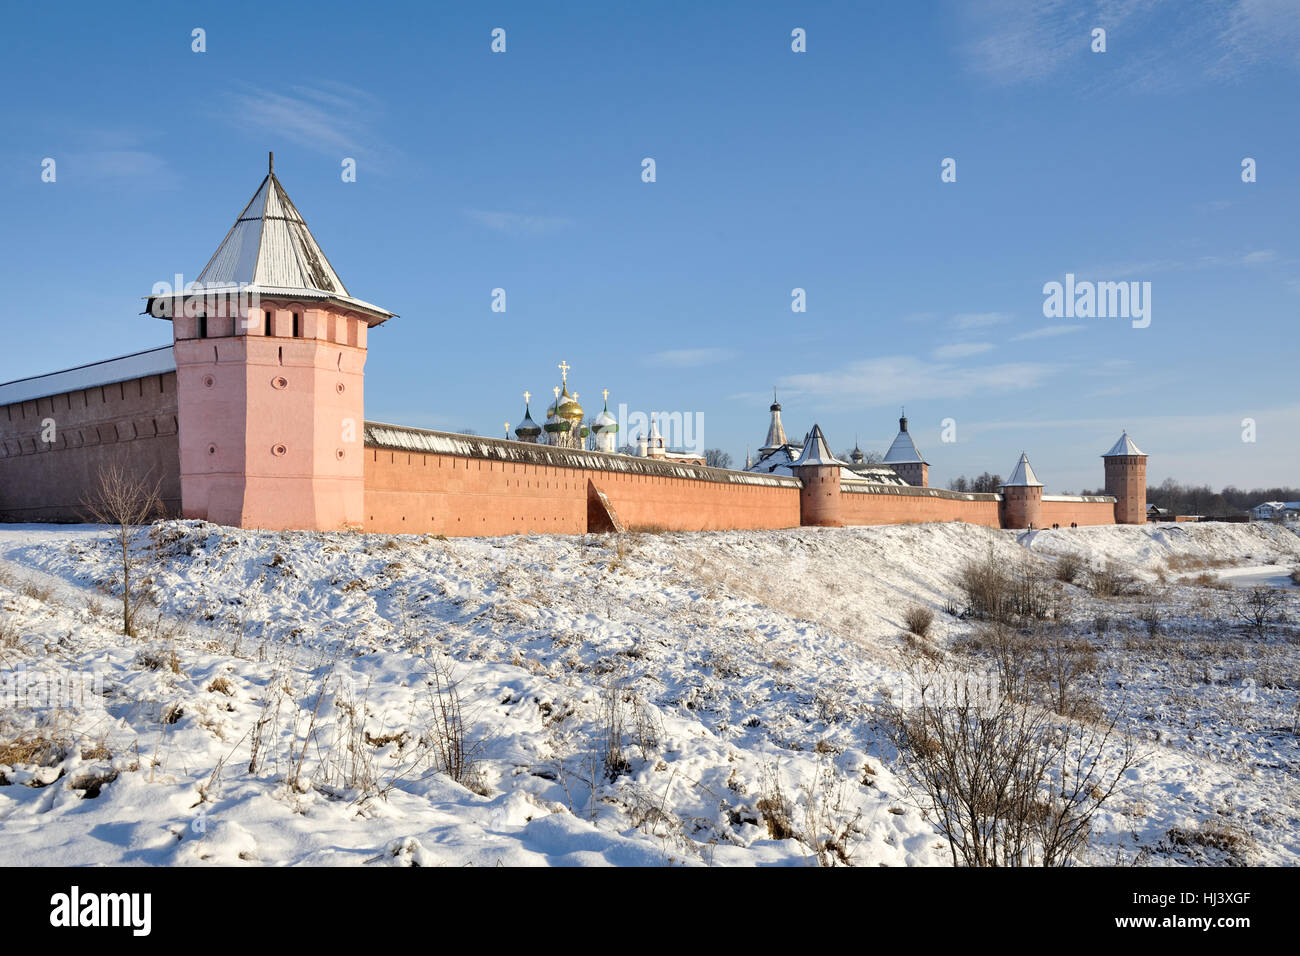 Monastère puissant murs et tours de Spaso-Yevfimyev monastère à la Banque du haut de la rivière Kamenka. Paysages urbains de Suzdal, Russie Banque D'Images